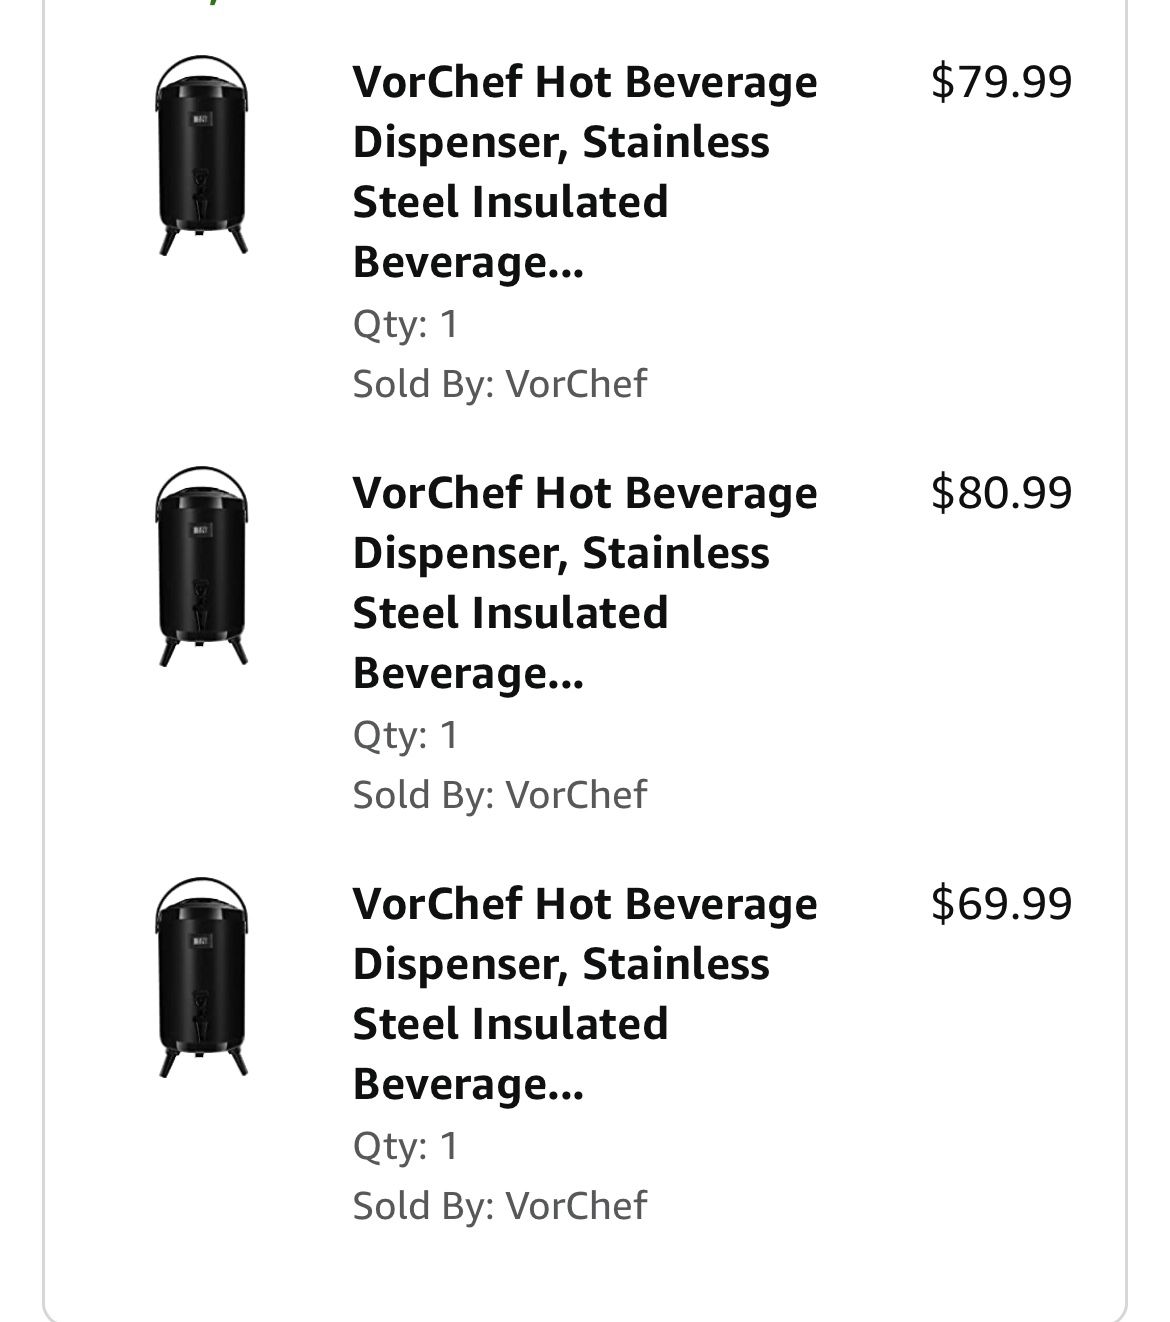 VorChef Hot Beverage Dispenser, Stainless Steel Insulated Beverage